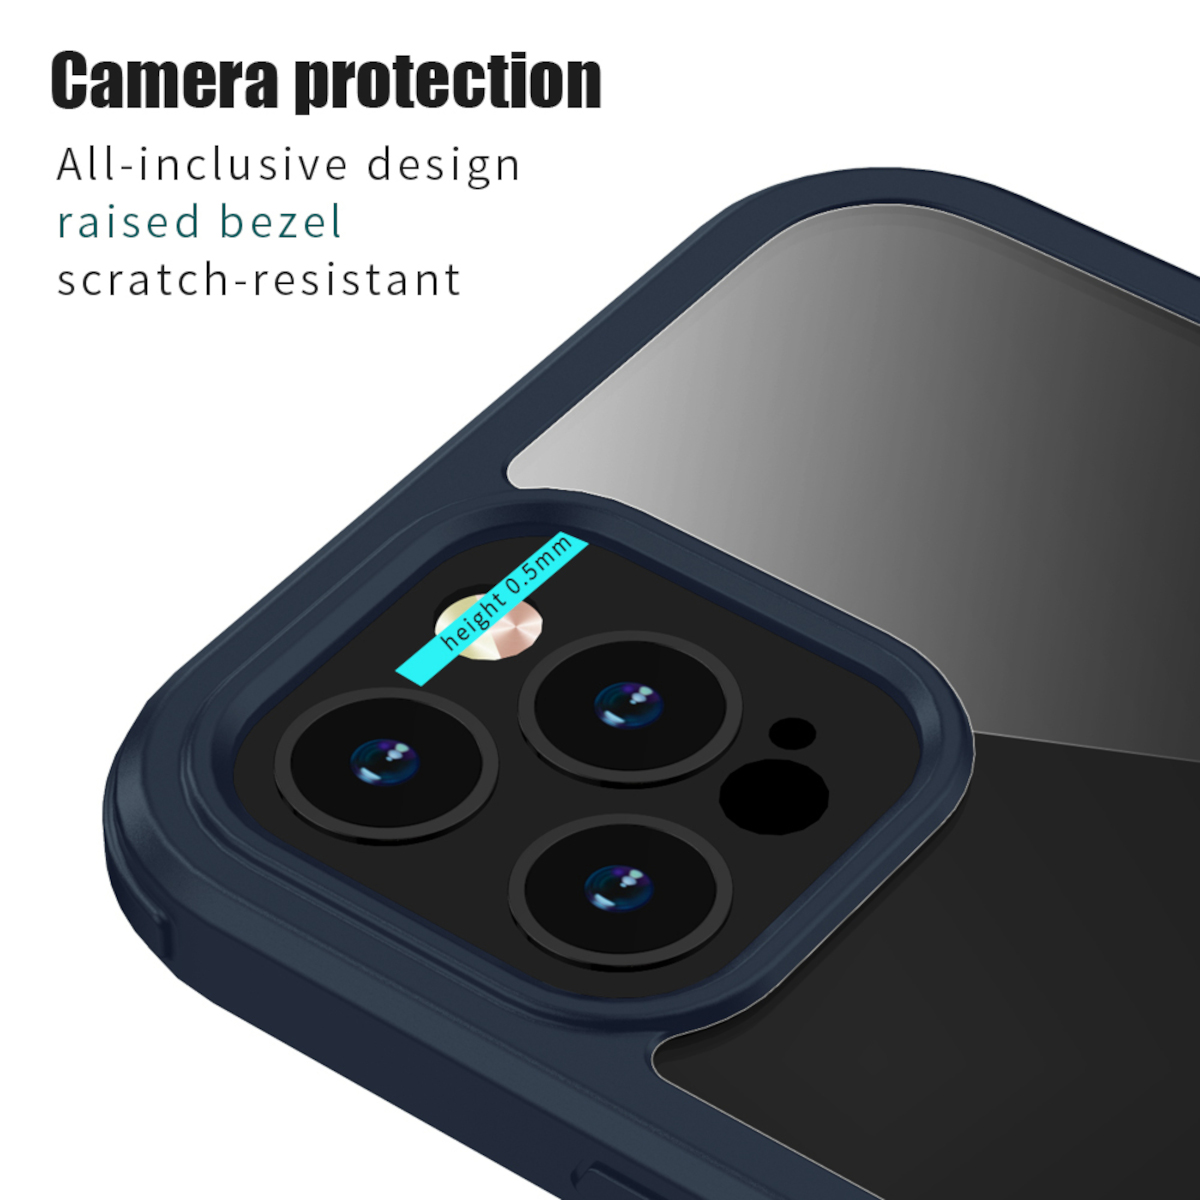 VALENTA Full Cover Pro, Full Apple, Glas, iPhone 13 Blau/Transparent Cover